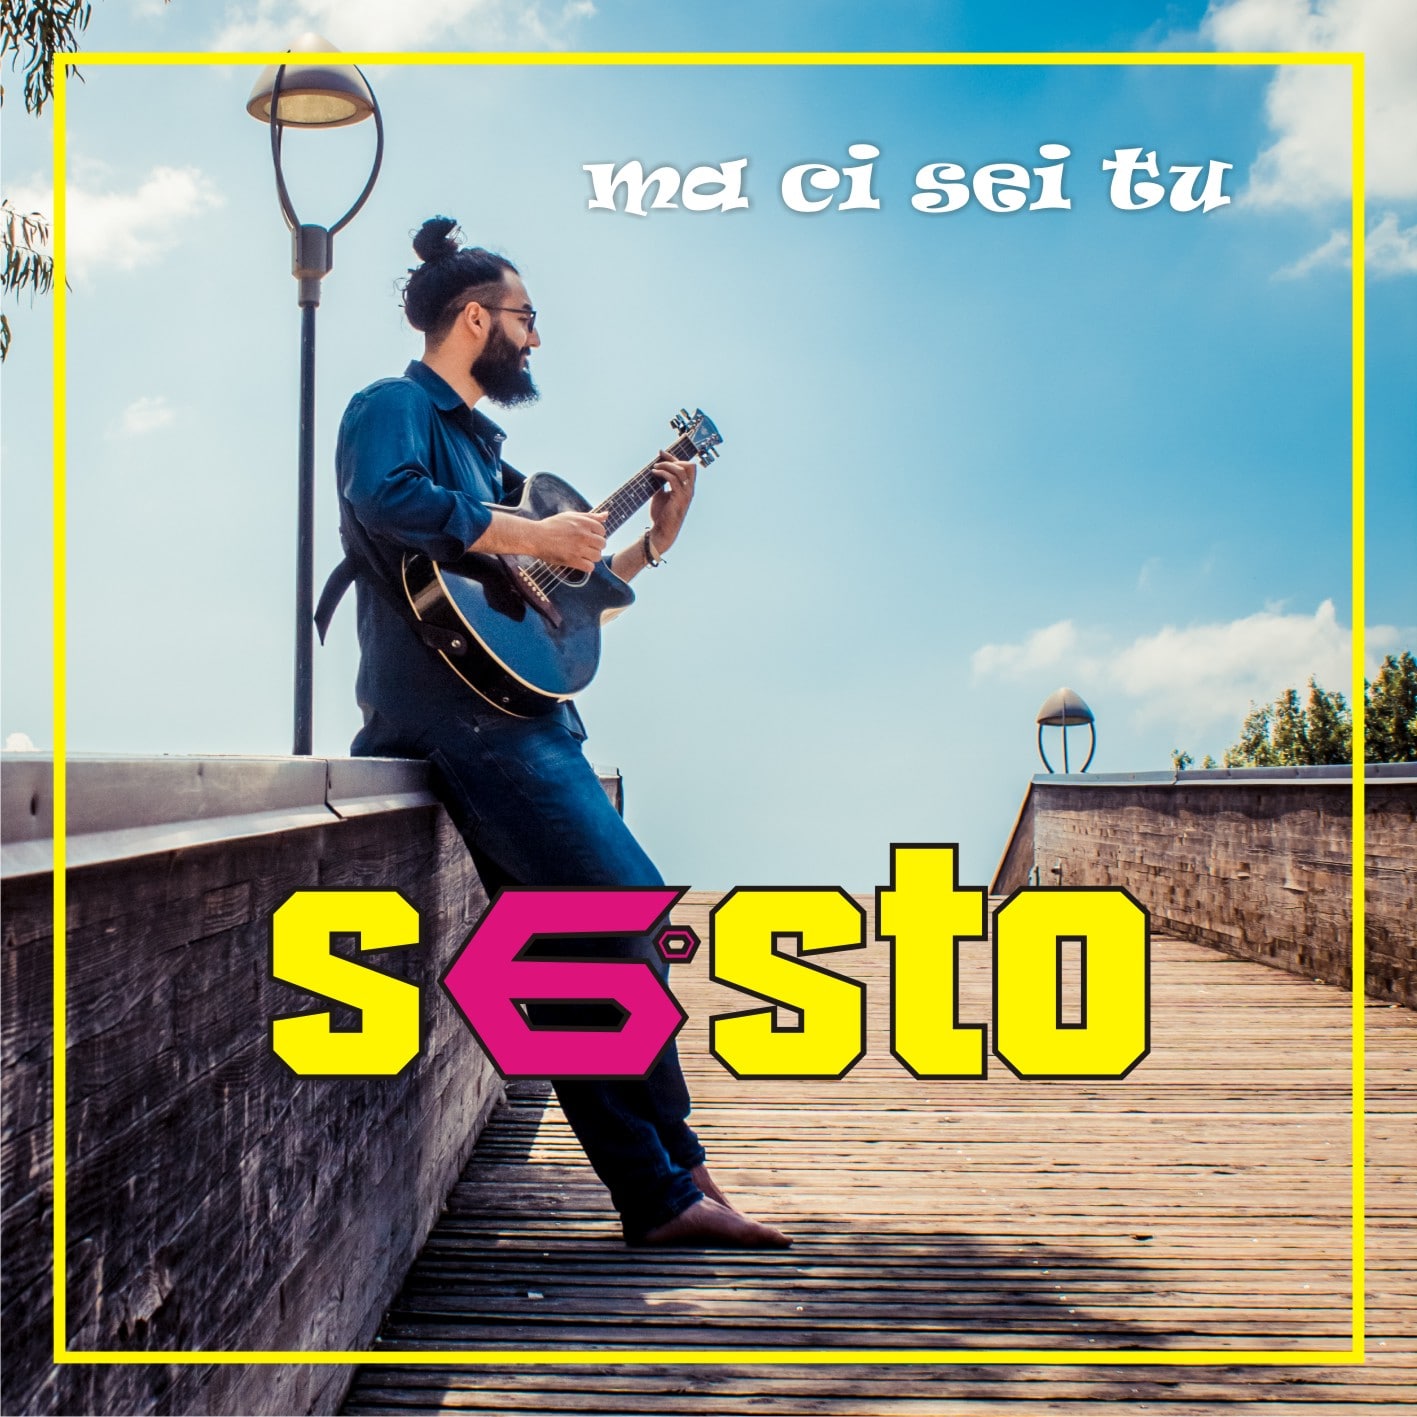 Ma ci sei tu: giovedì 18 luglio il cantautore Sesto presenta il suo EP a Cardito